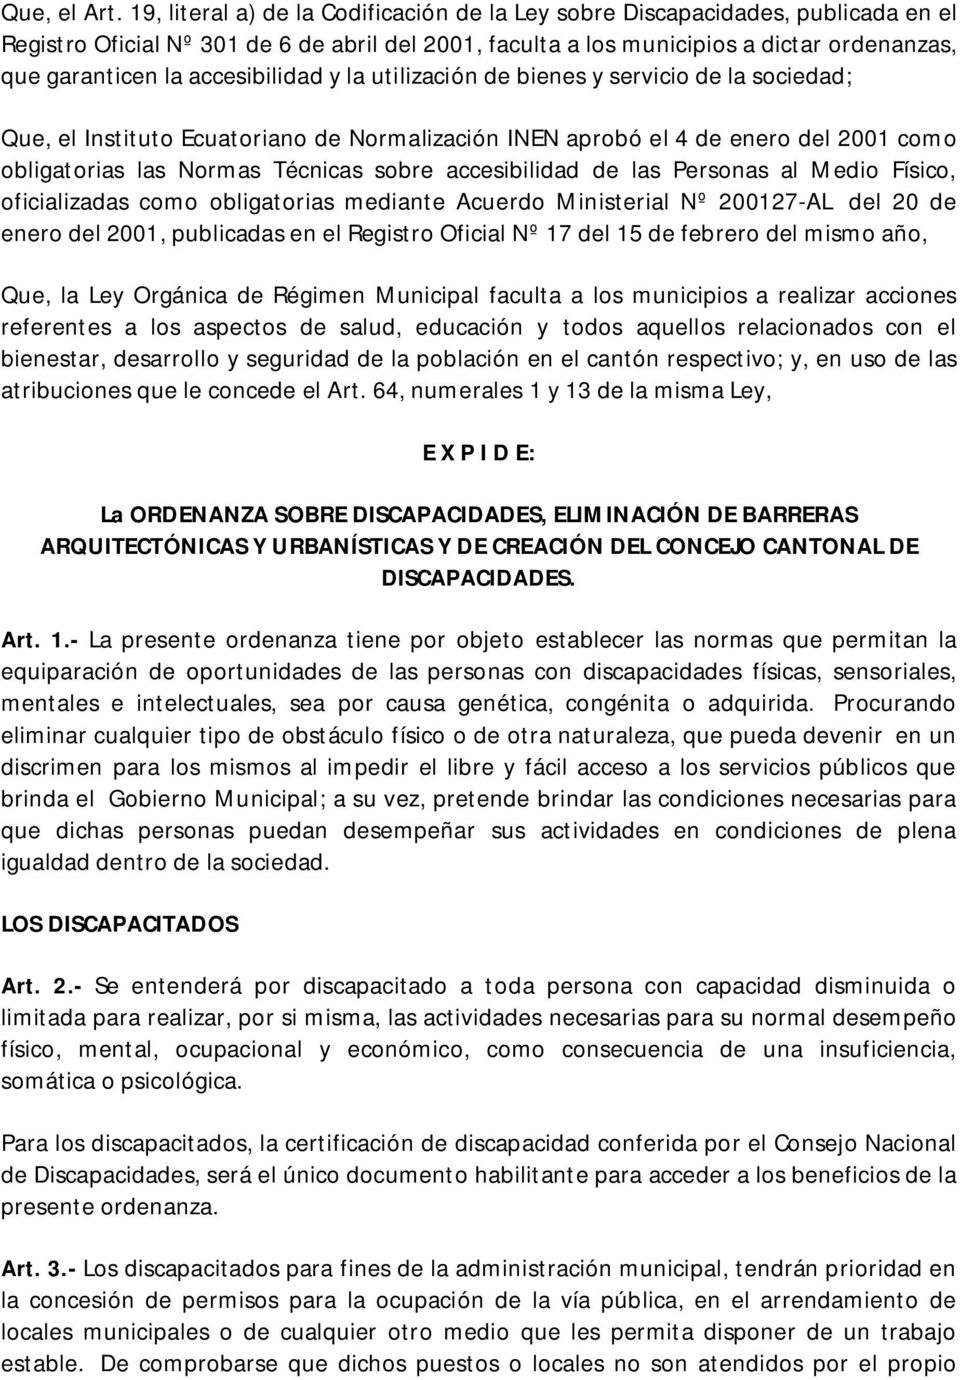 accesibilidad y la utilización de bienes y servicio de la sociedad; Que, el Instituto Ecuatoriano de Normalización INEN aprobó el 4 de enero del 2001 como obligatorias las Normas Técnicas sobre